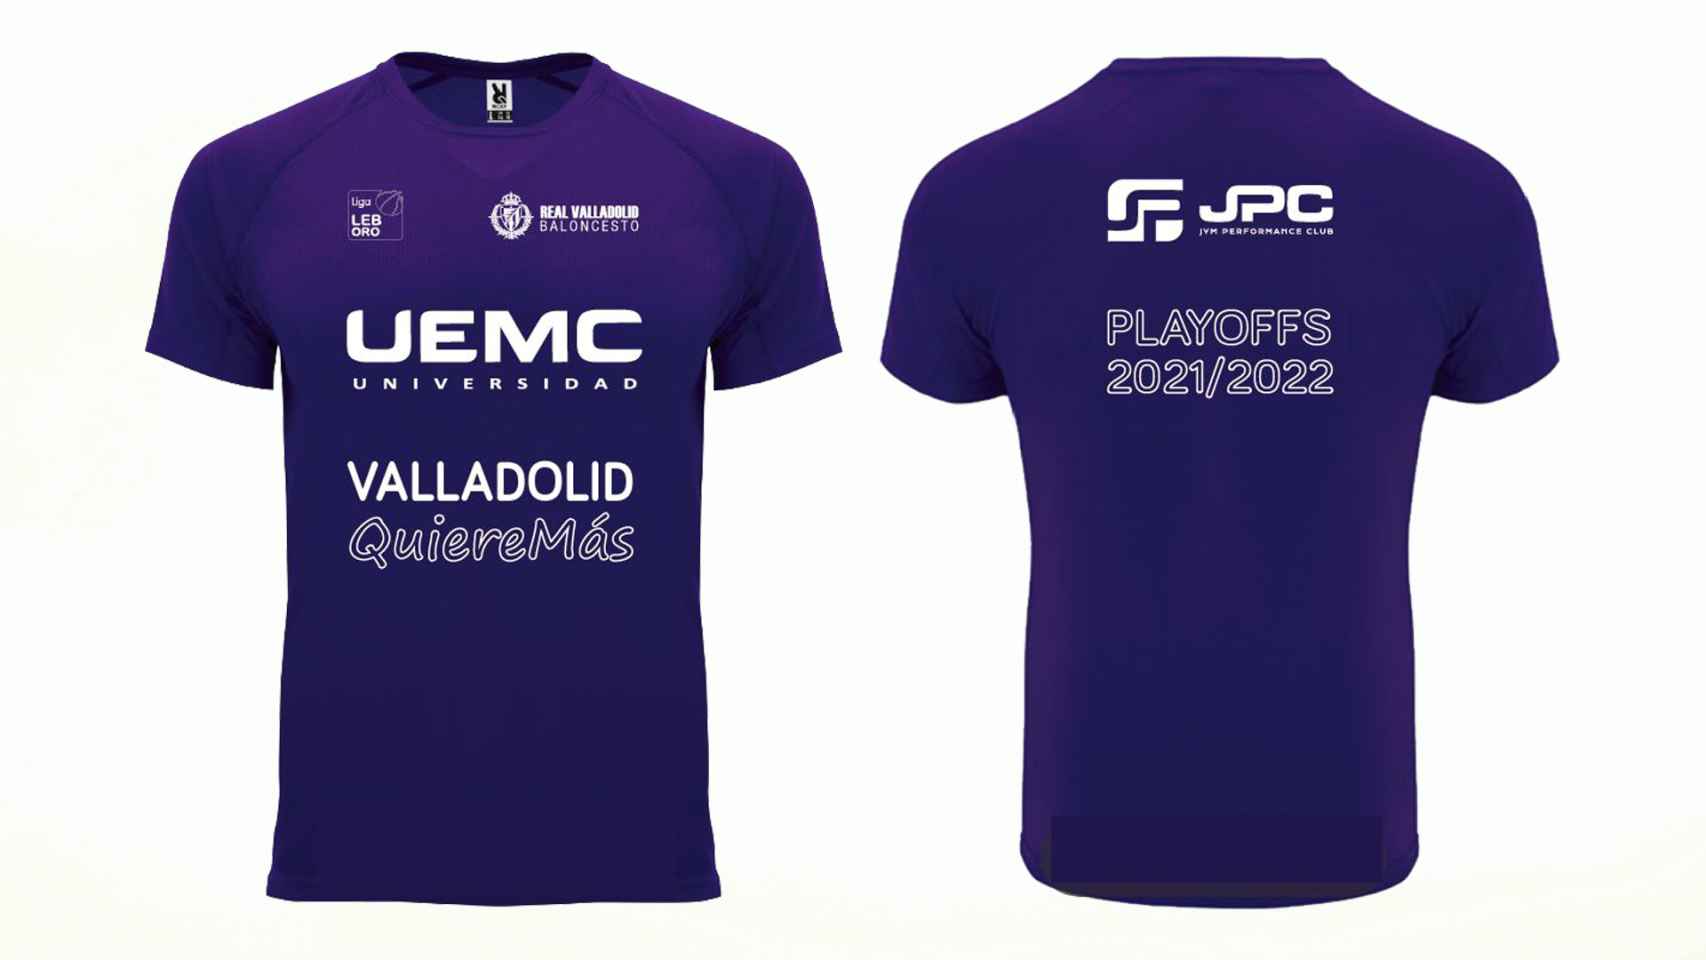 Camiseta promocional del Playoff del Real Valladolid Baloncesto